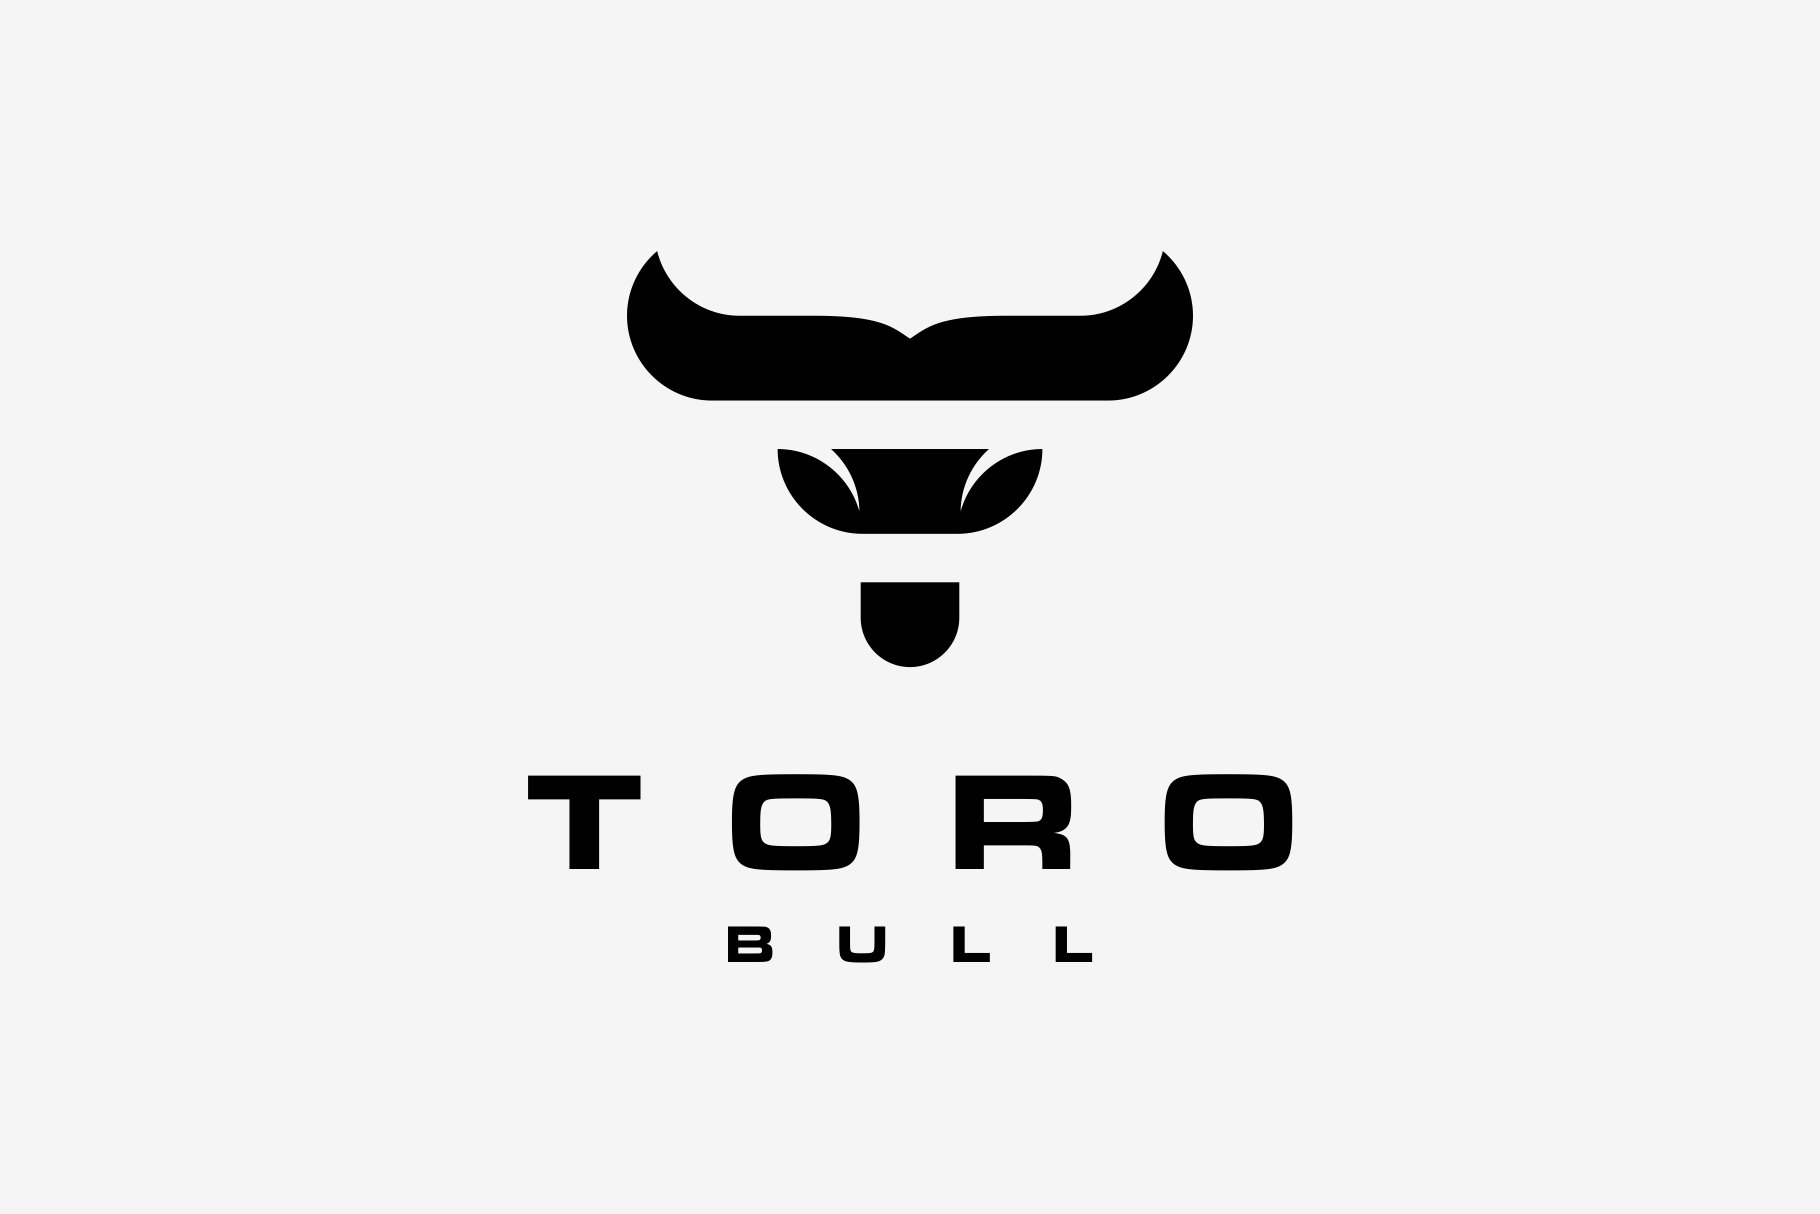 Letter T Head Bull Mascot Logo cover image.